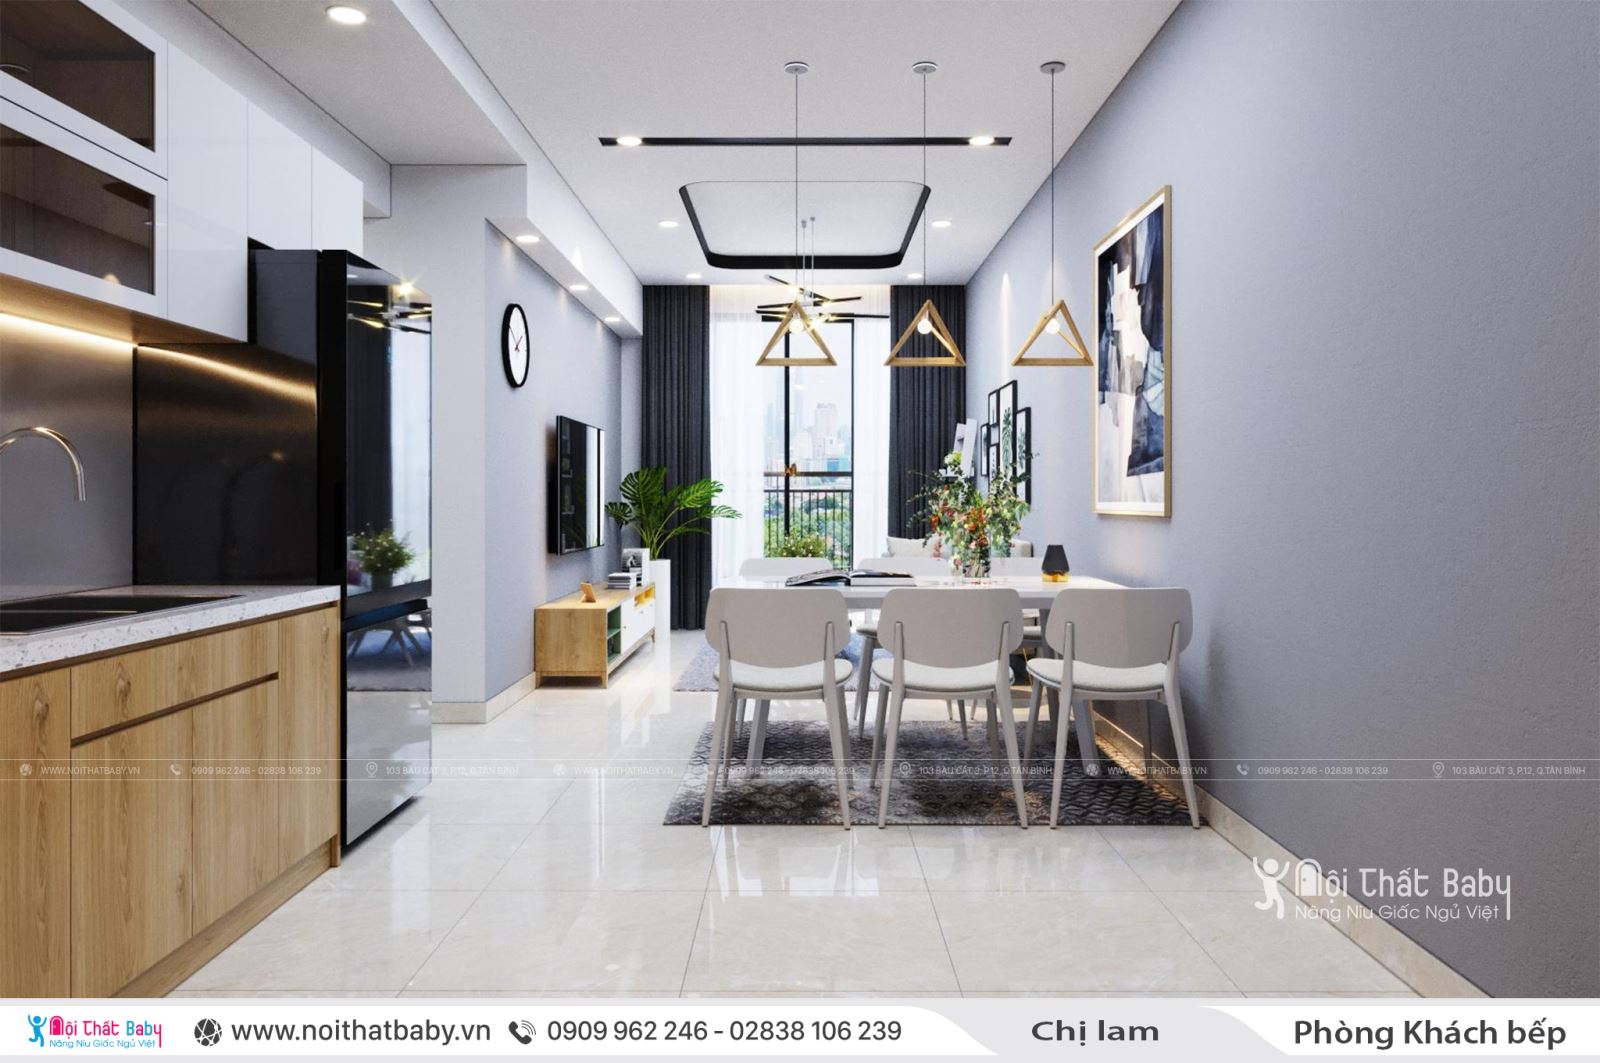 Mẫu thiết kế nội thất căn hộ chung cư hiện đại tại Emerald Celadon City 74m2